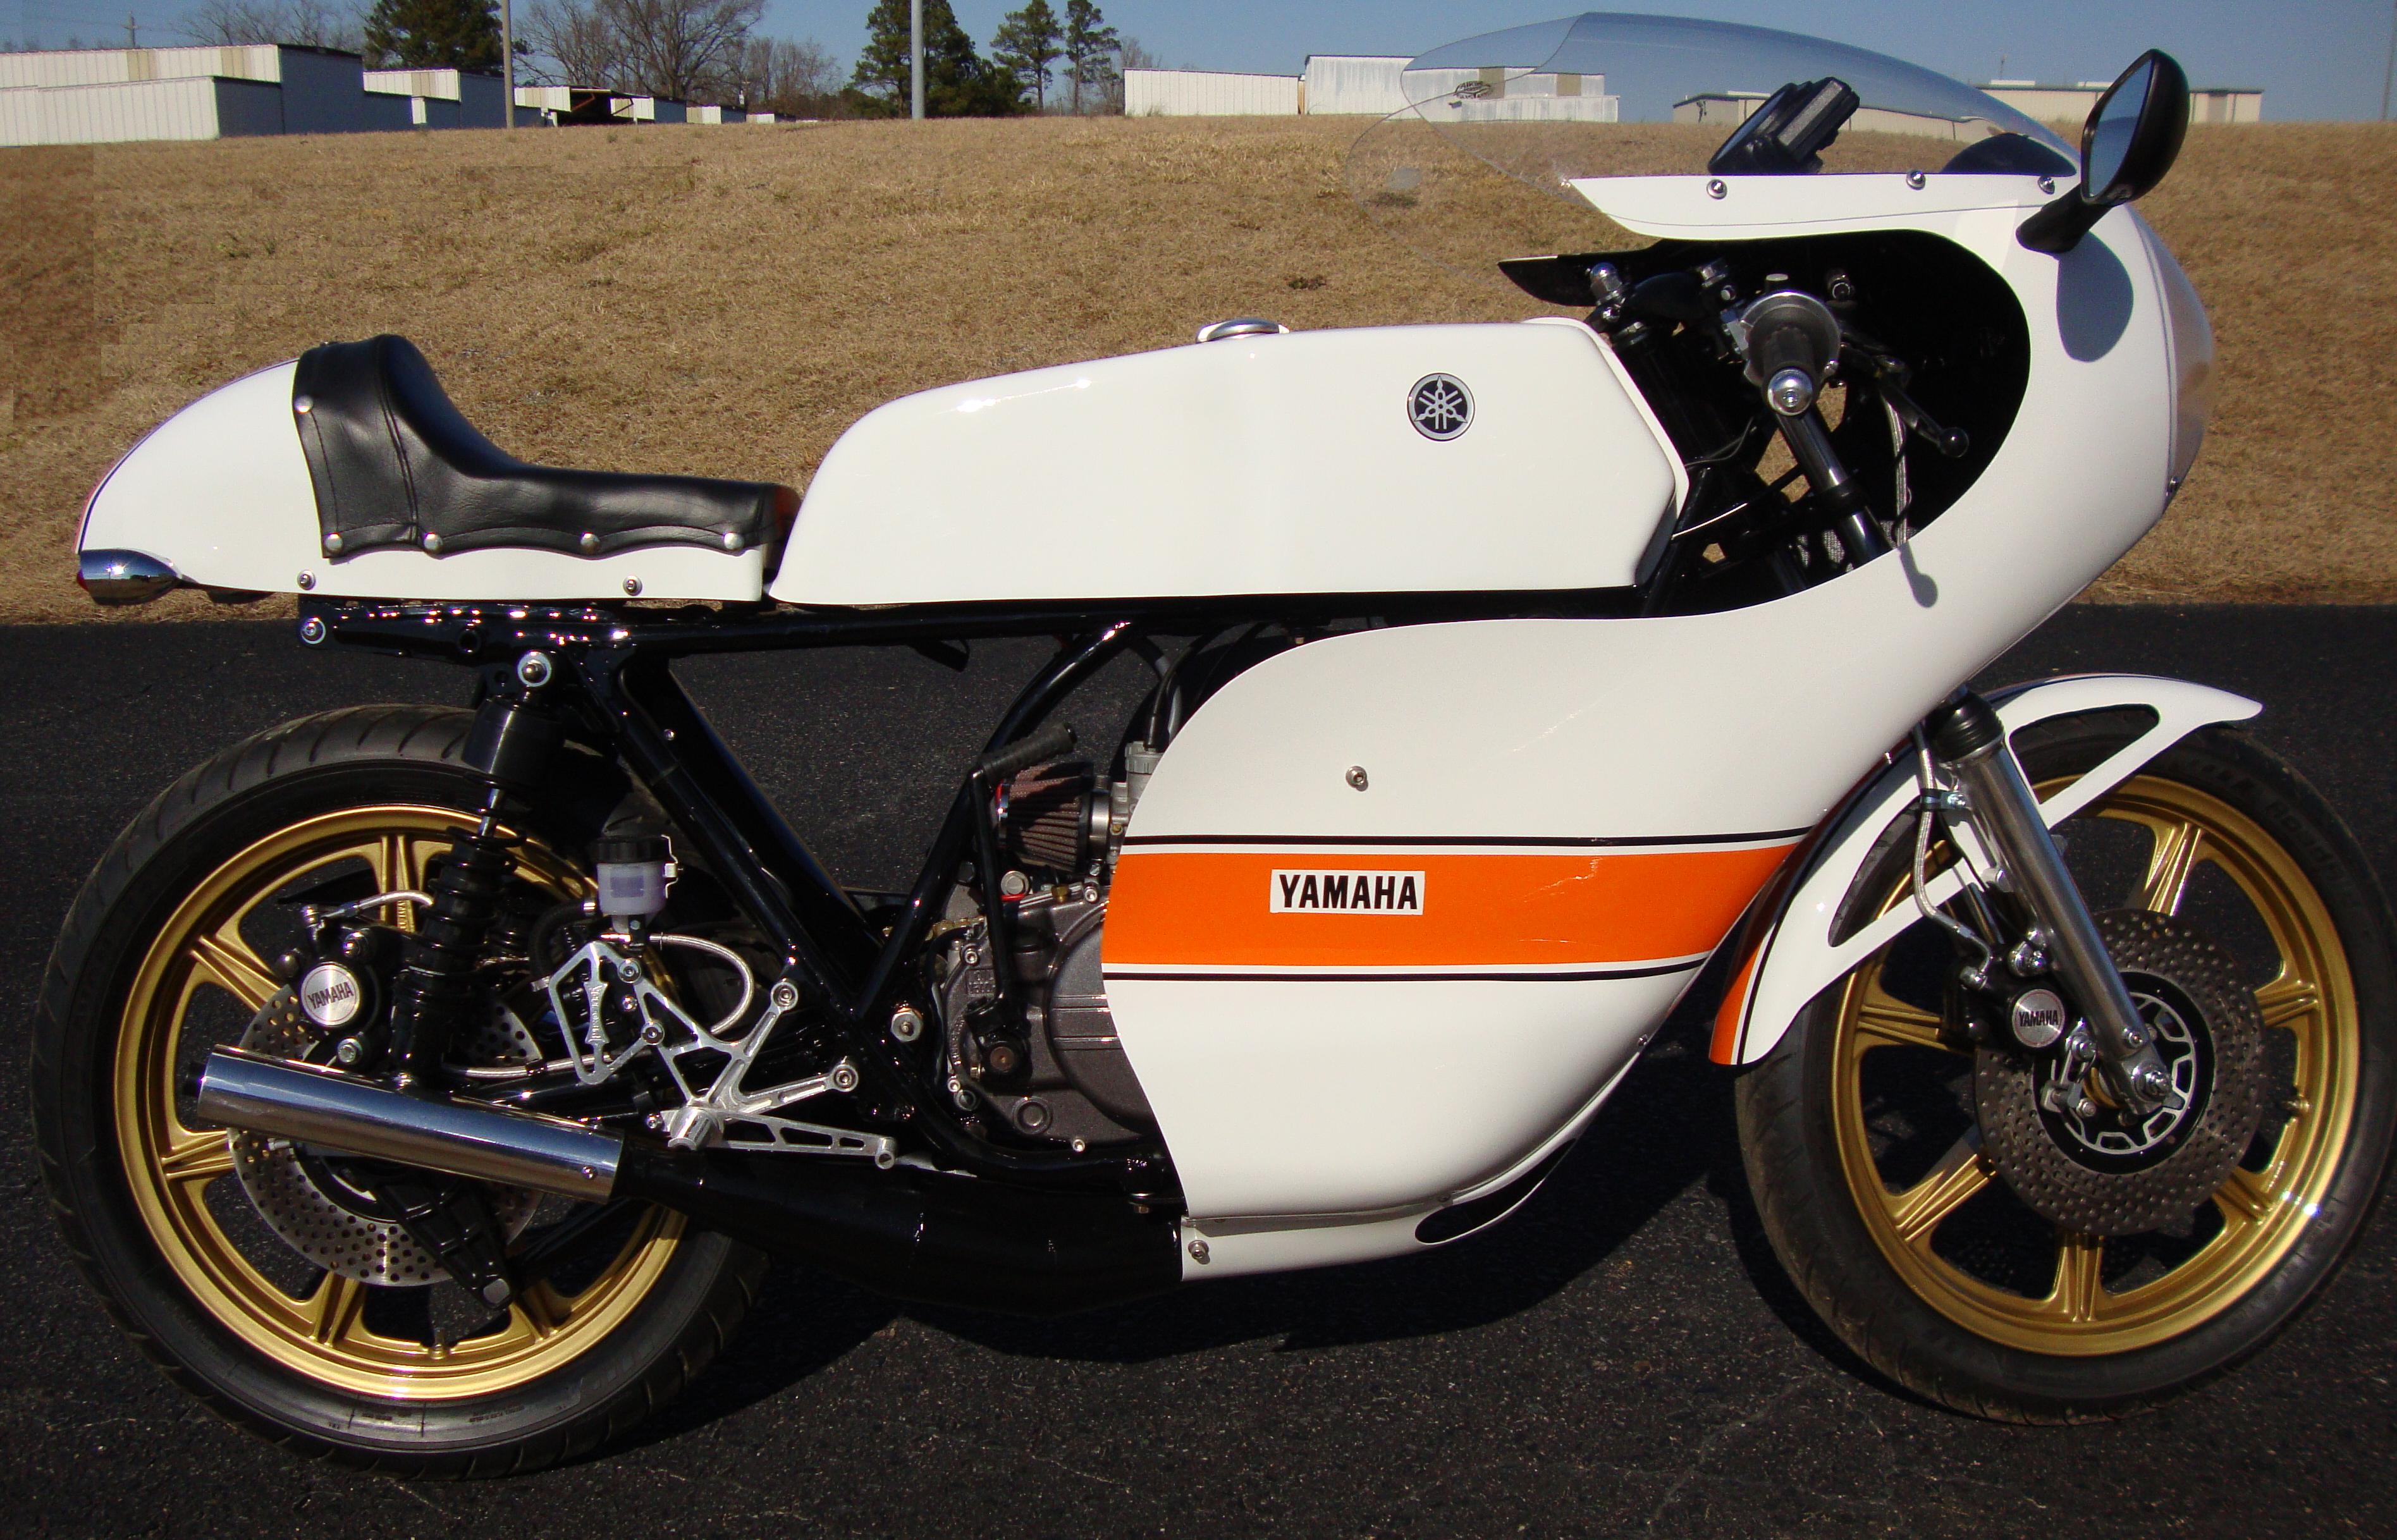 1974 Yamaha RD 250/350 rcycle.com